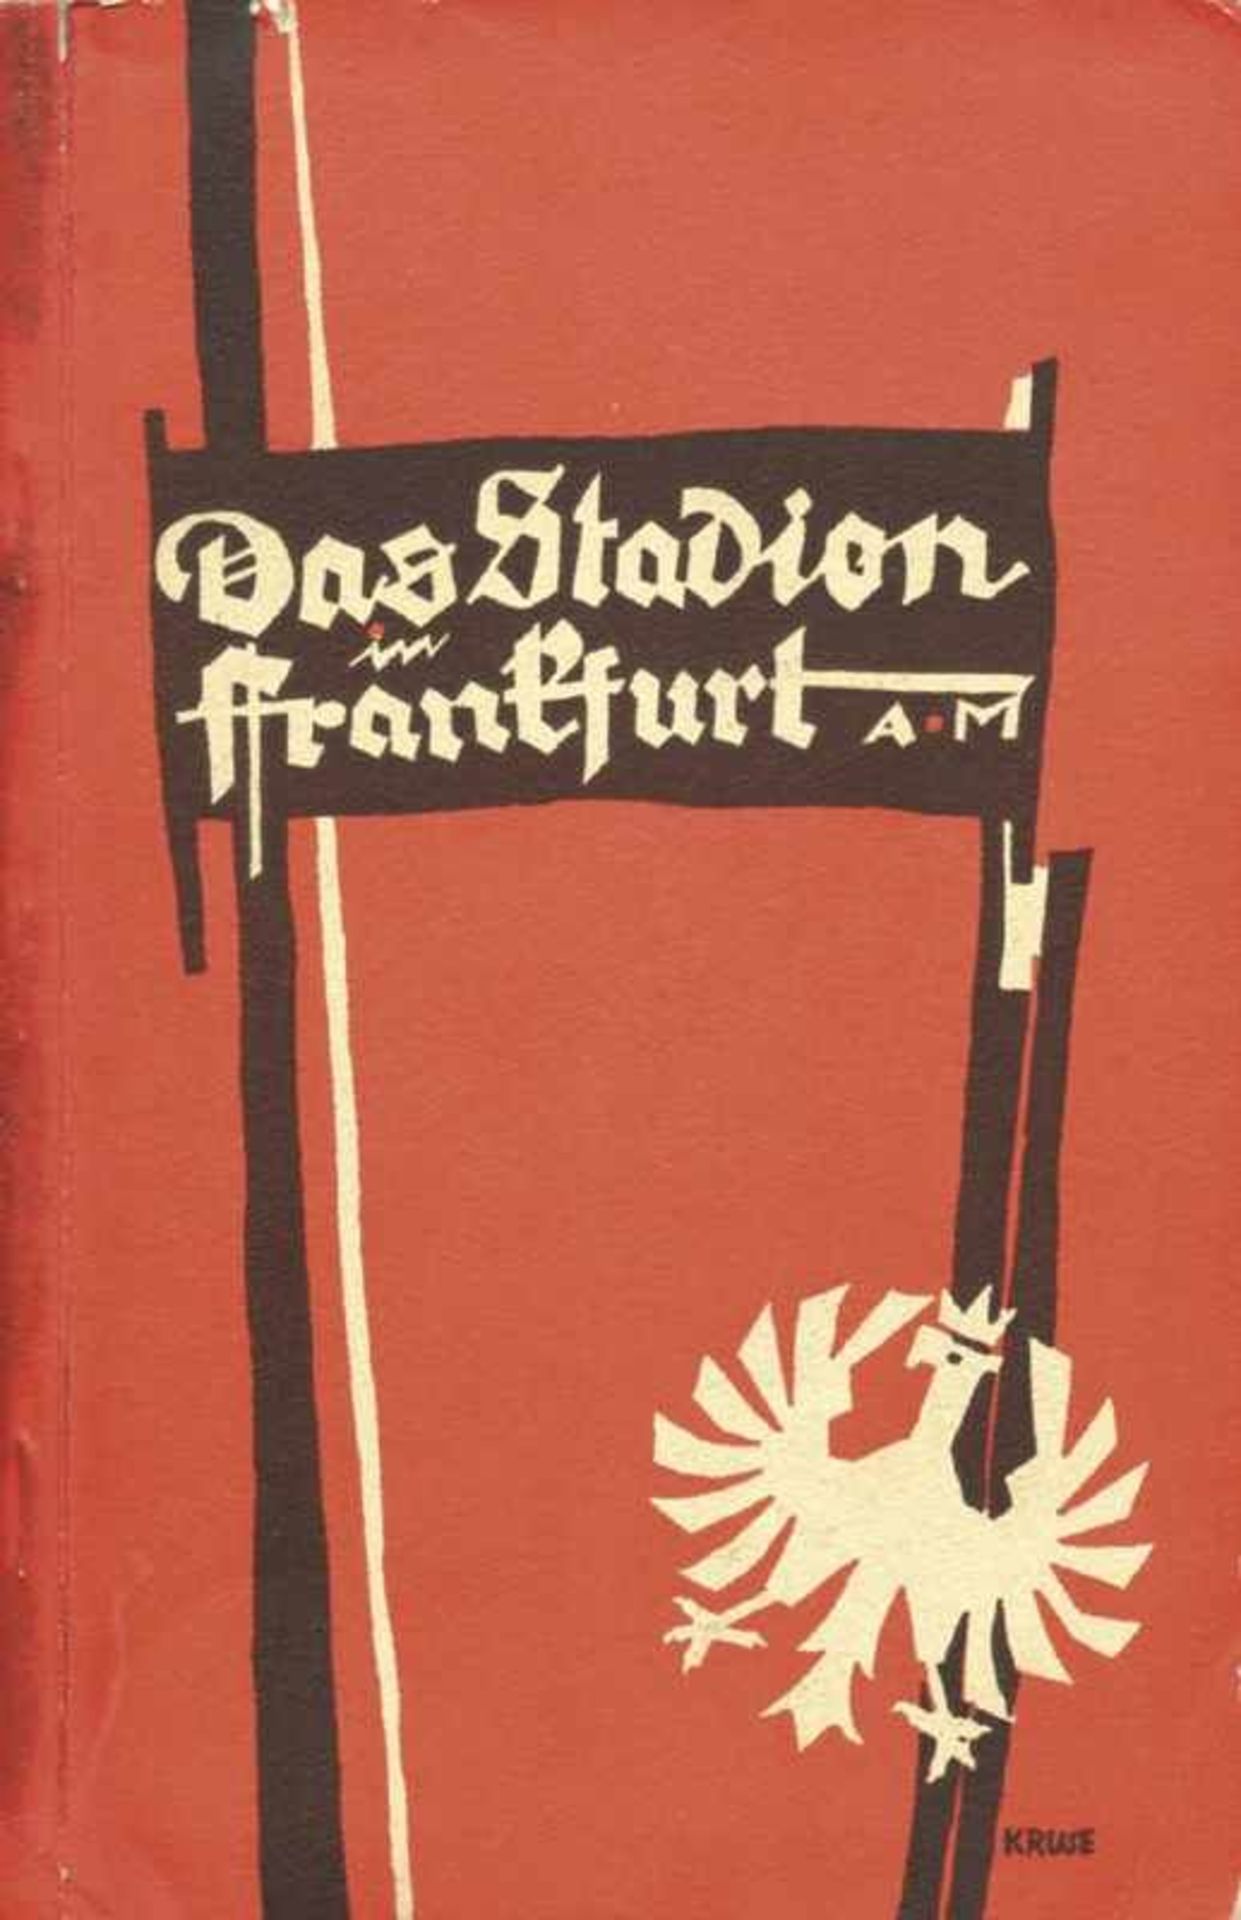 Eintracht Frankfurt 1925 Stadium Innuagaration - Frankfurt-Echternach - Festbuch zur Stadionweihe